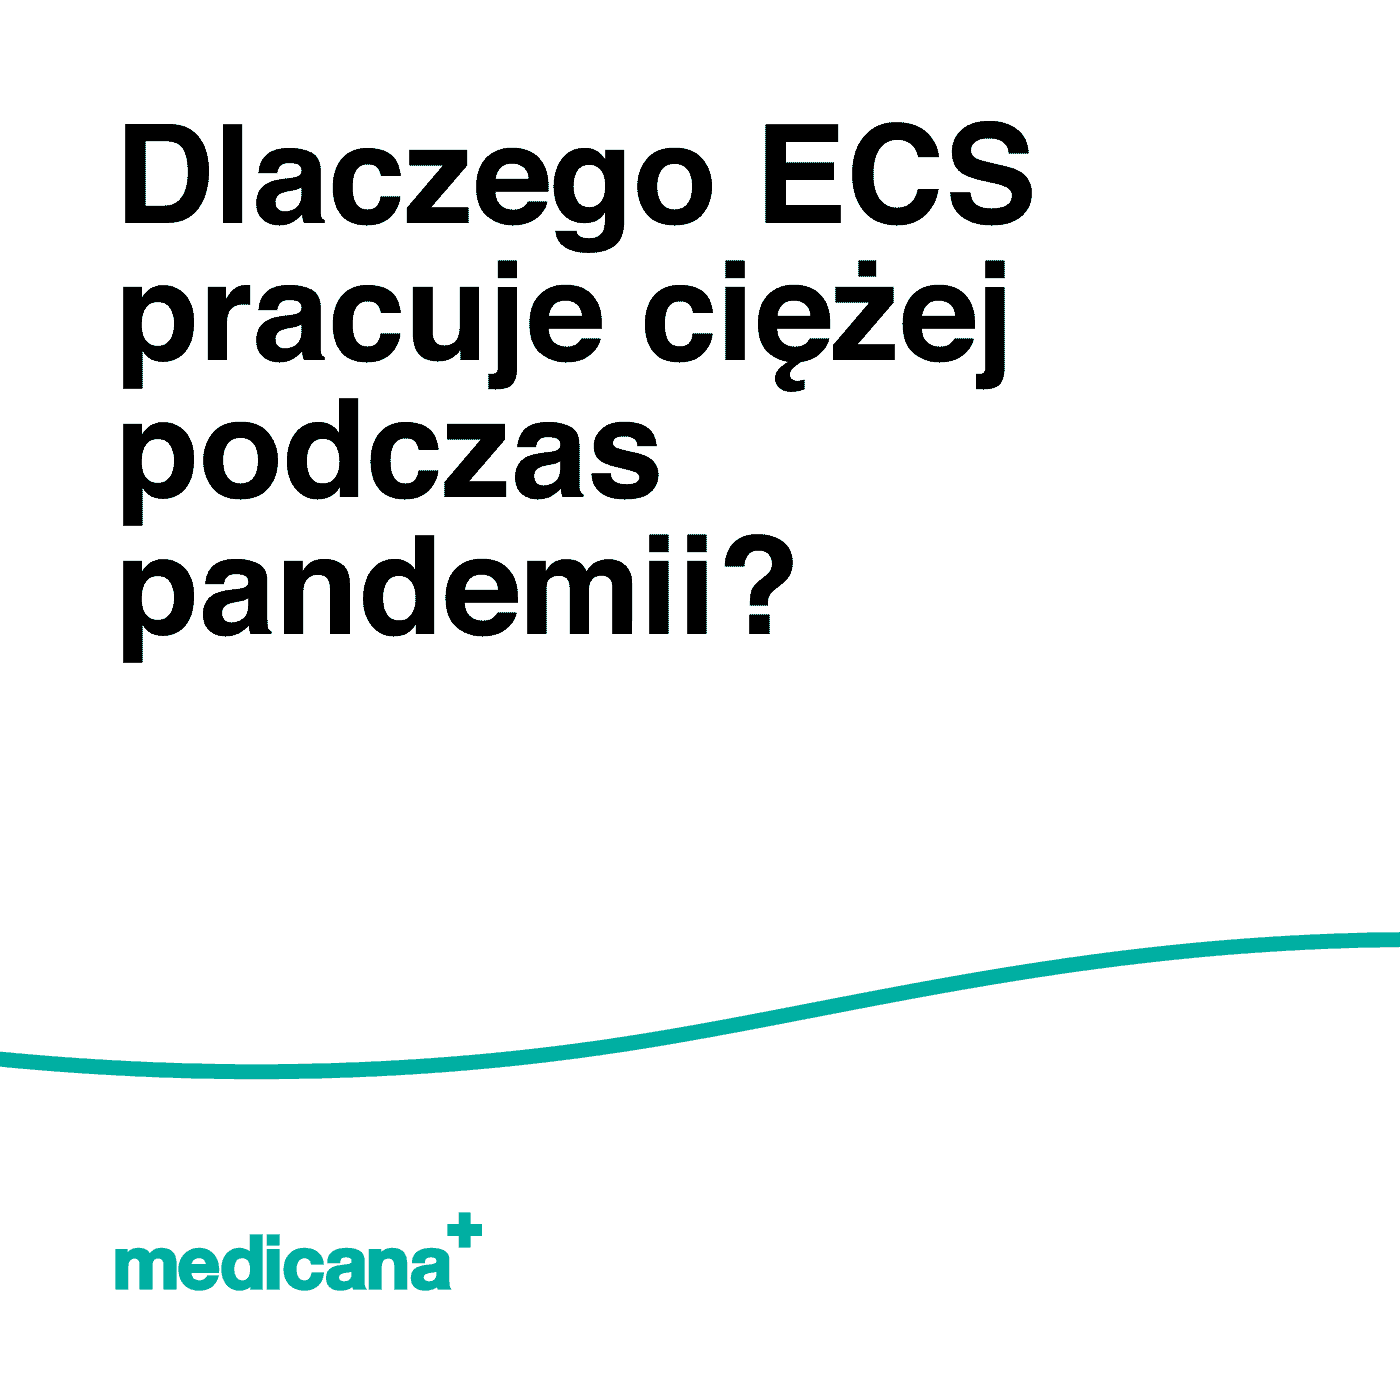 Grafika, na białym tle napis: Dlaczego ECS pracuje ciężej podczas pandemii COVID - 19? oraz zieloną linią i logo Medicana Centrum Terapii Medyczna Marihuana w lewym dolnym rogu.